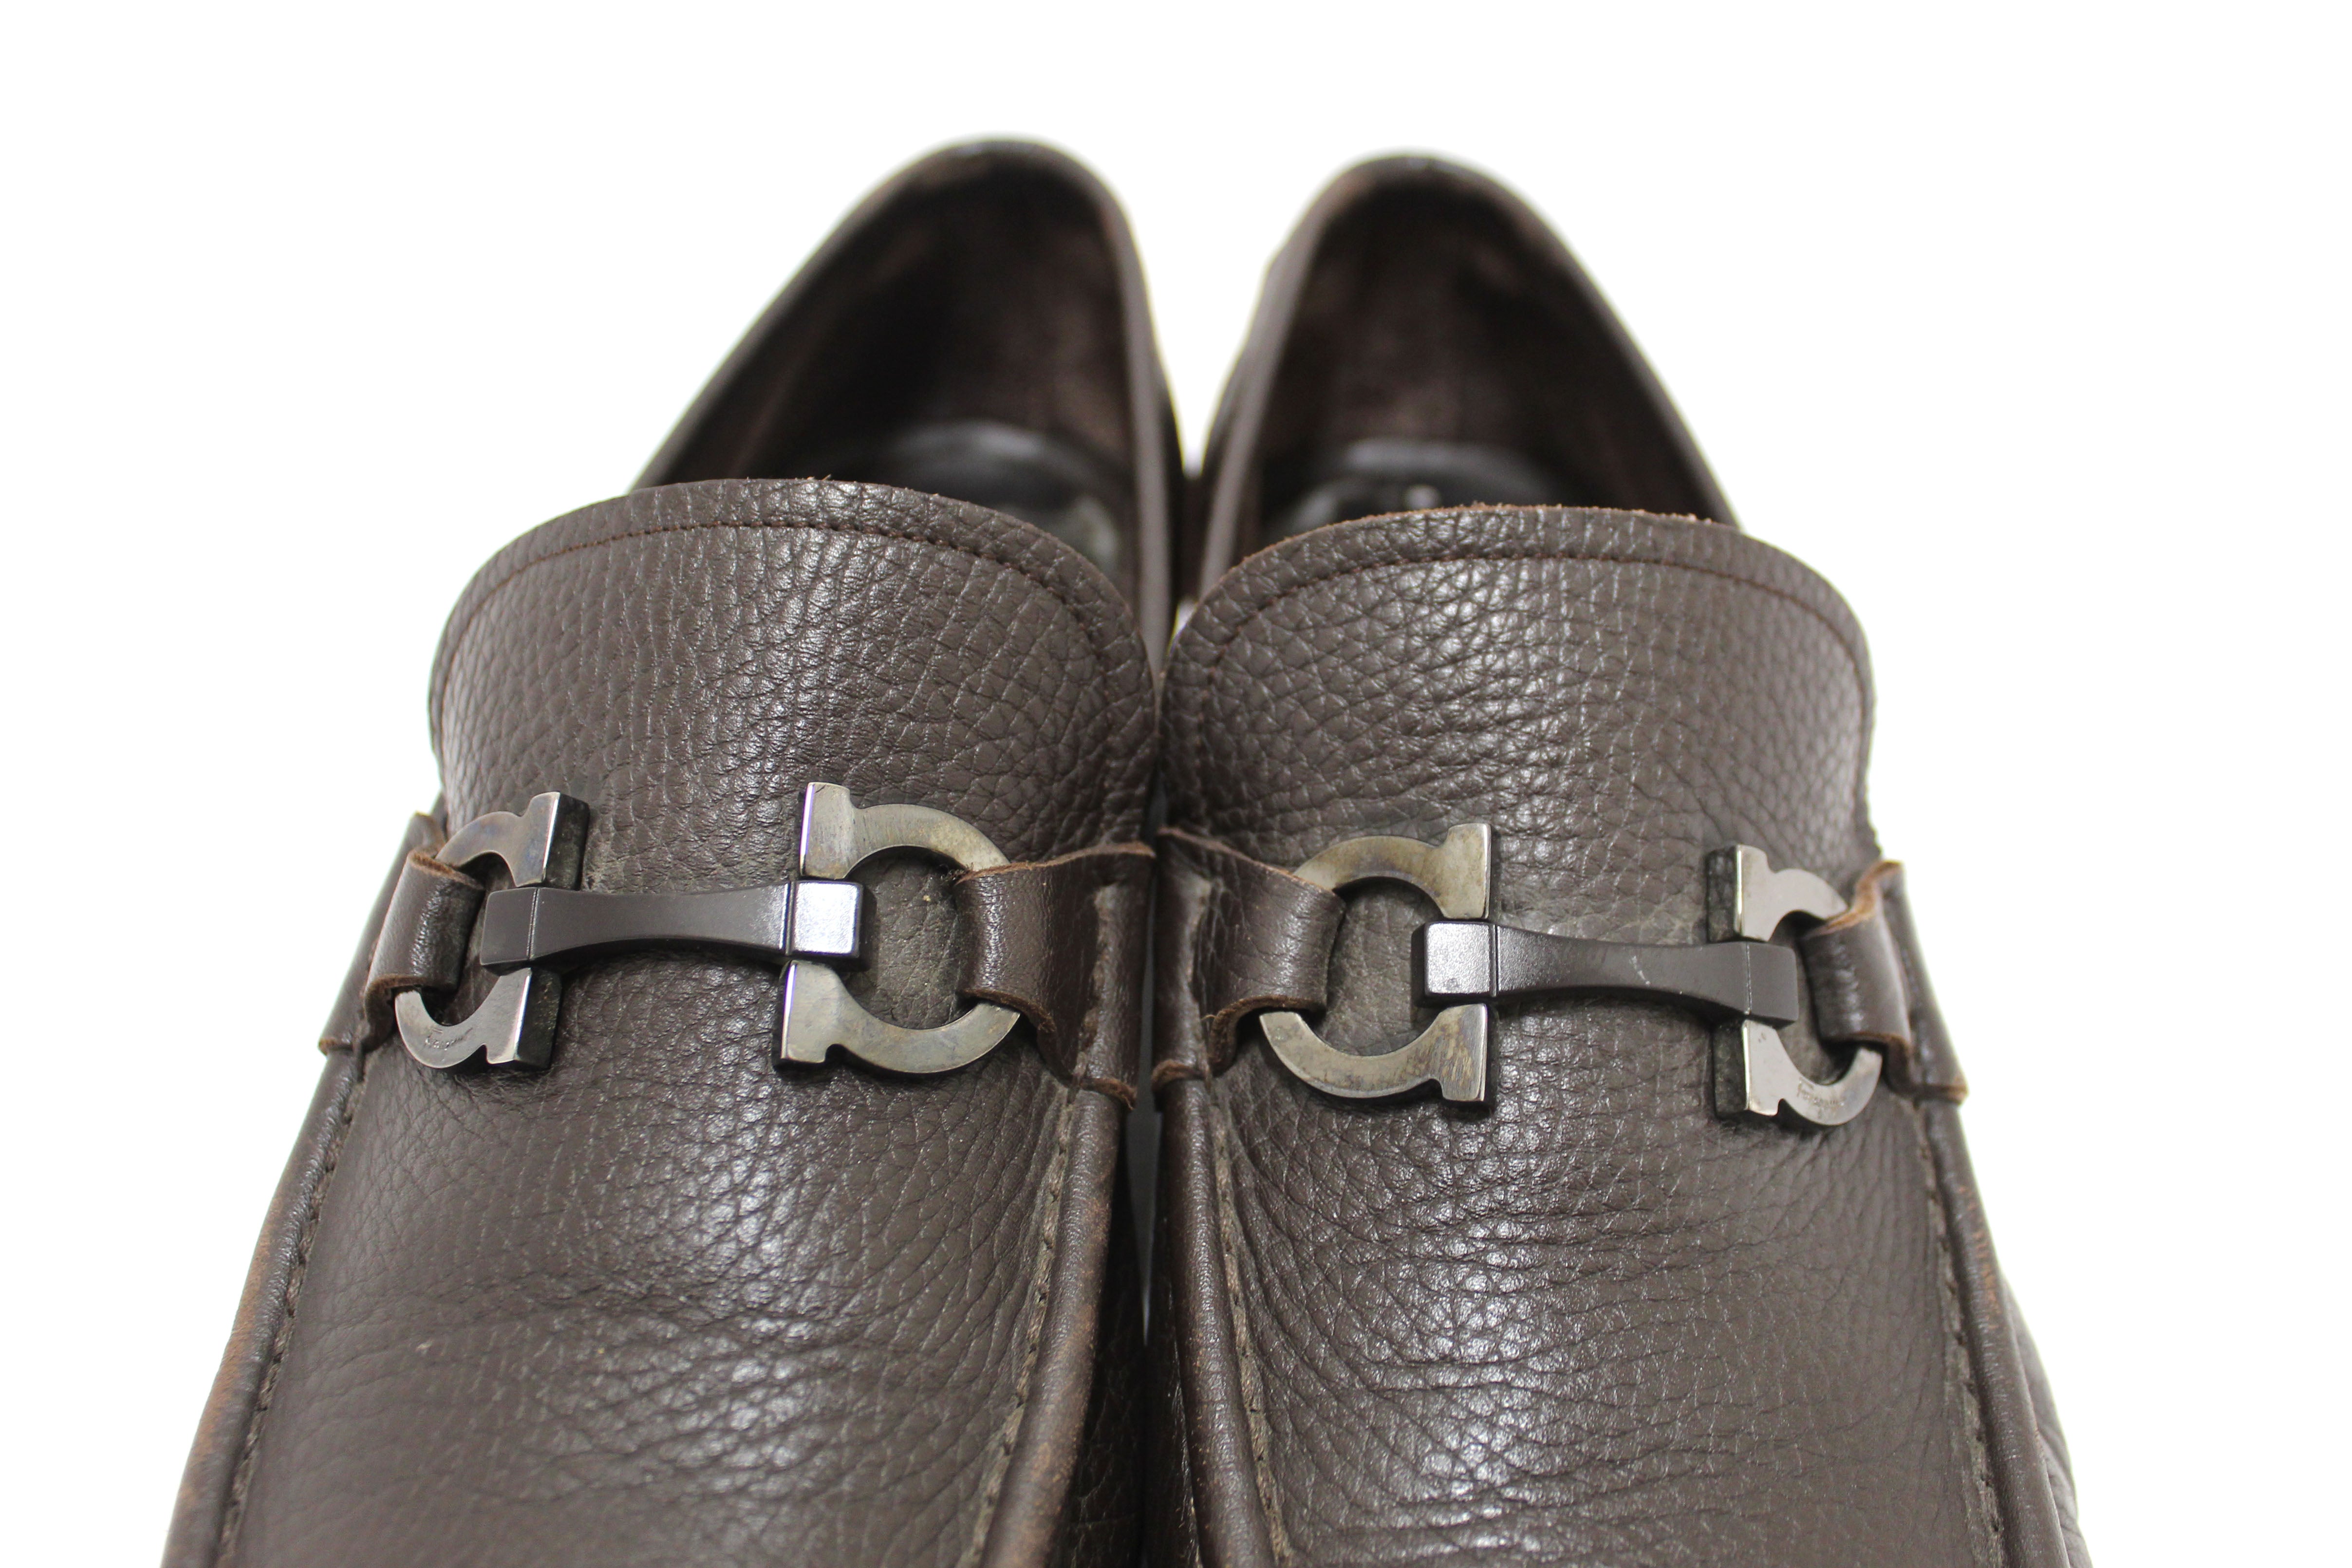 Authentic Salvatore Ferragamo Men's Brown Grandioso Calf Leather Loafer Dress Shoes size 8